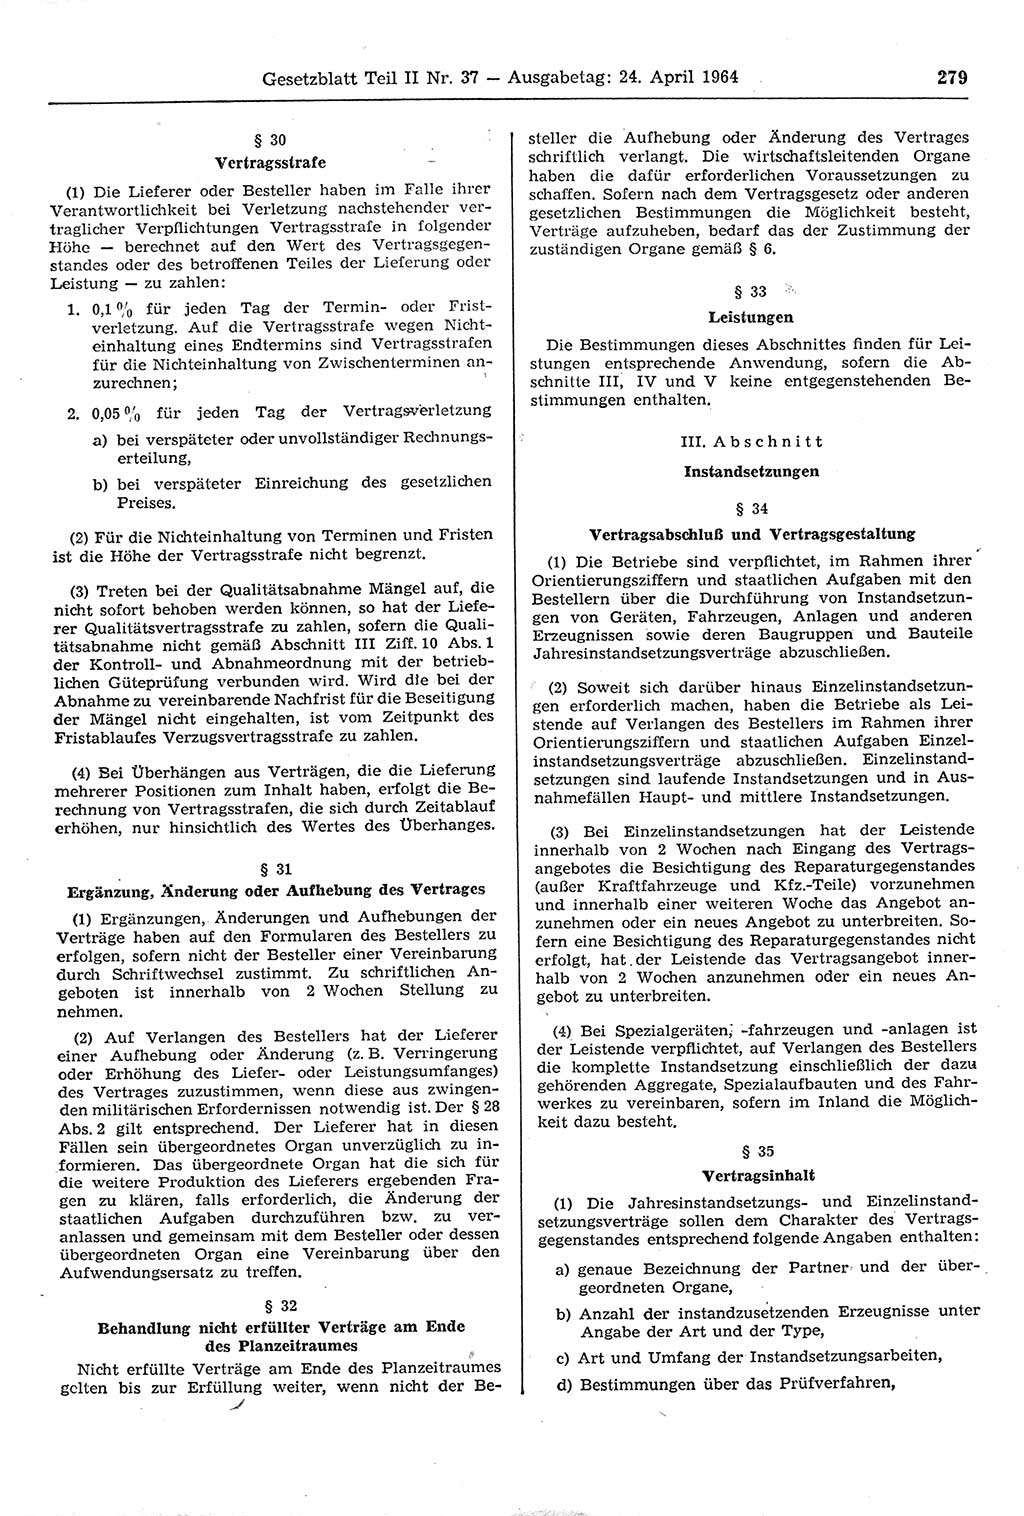 Gesetzblatt (GBl.) der Deutschen Demokratischen Republik (DDR) Teil ⅠⅠ 1964, Seite 279 (GBl. DDR ⅠⅠ 1964, S. 279)